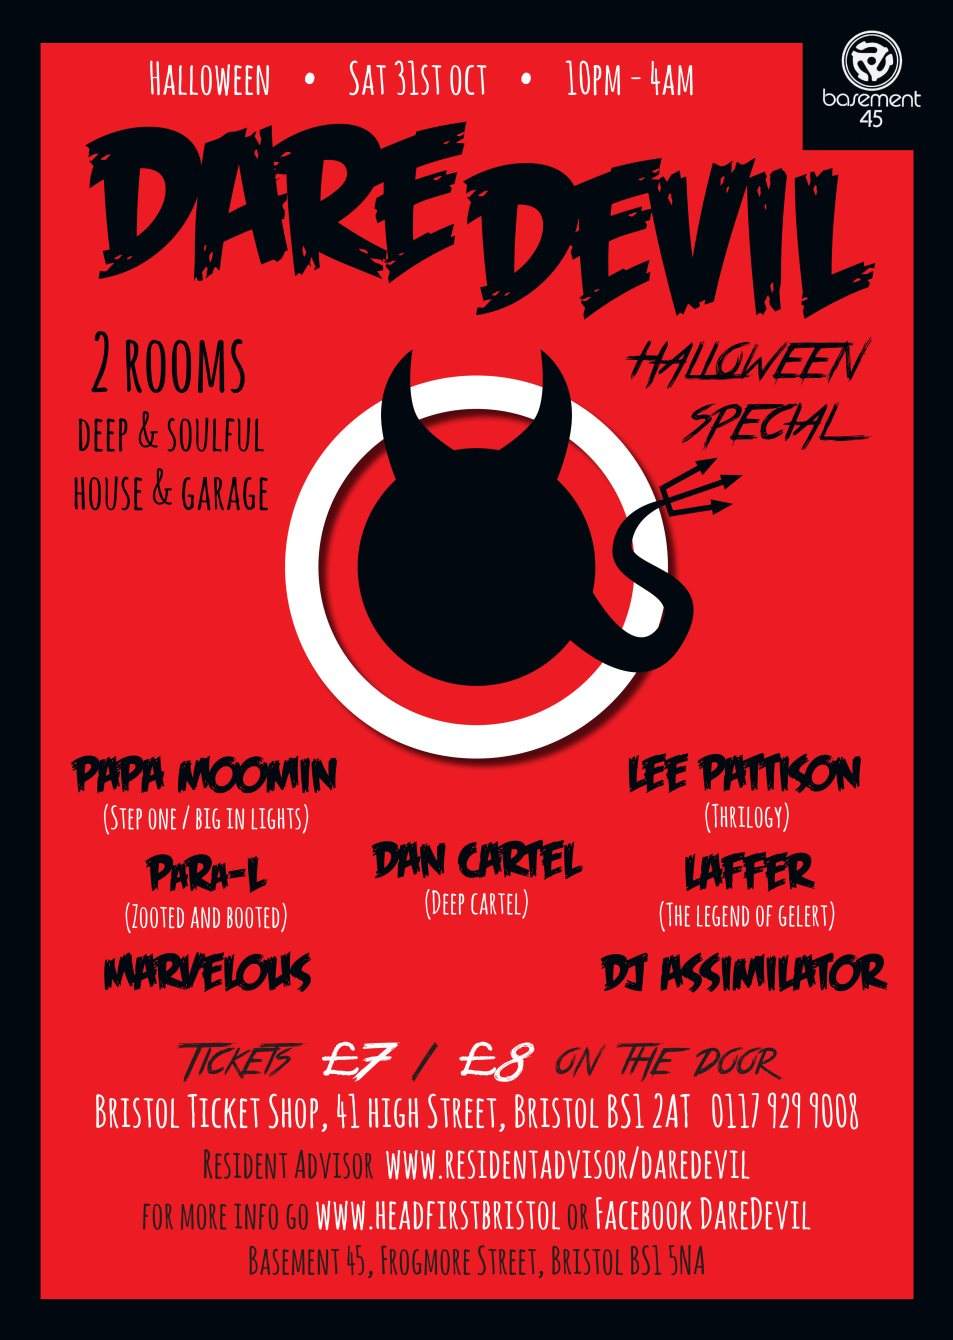 Dare Devil Halloween Special - Página frontal